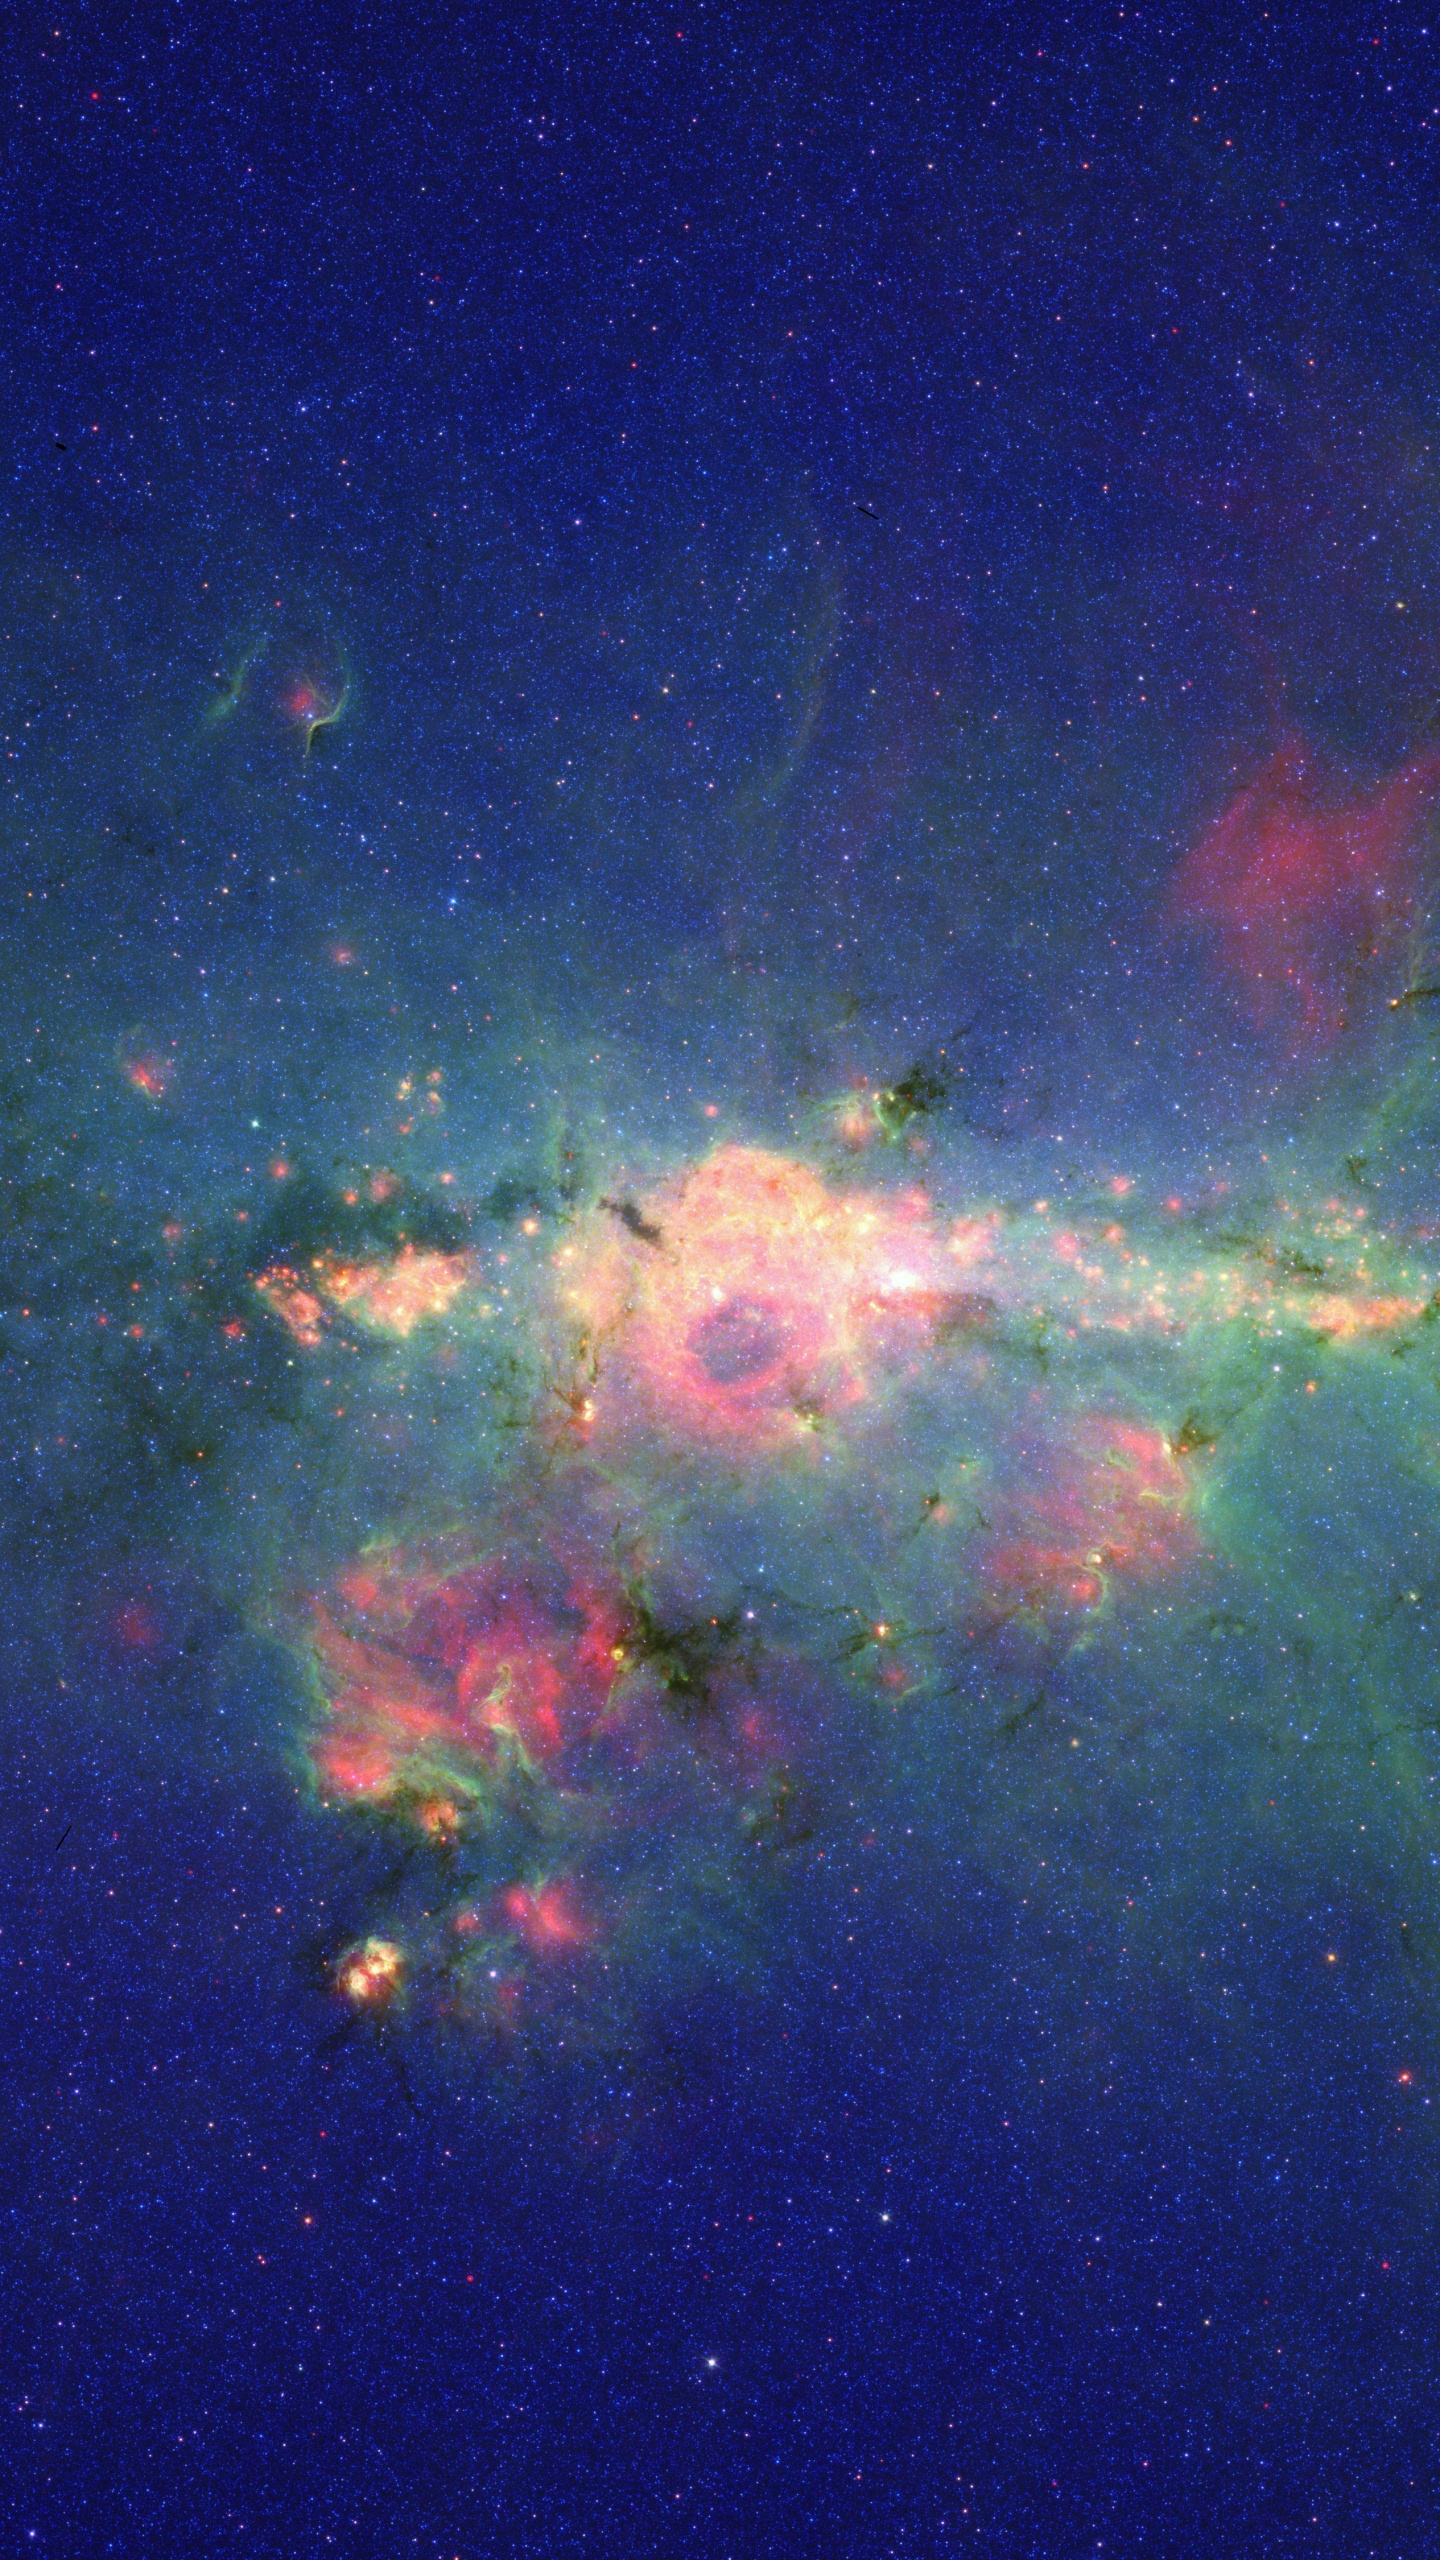 银河系, 斯皮策太空望远镜, 明星, 气氛, 天文学对象 壁纸 1440x2560 允许